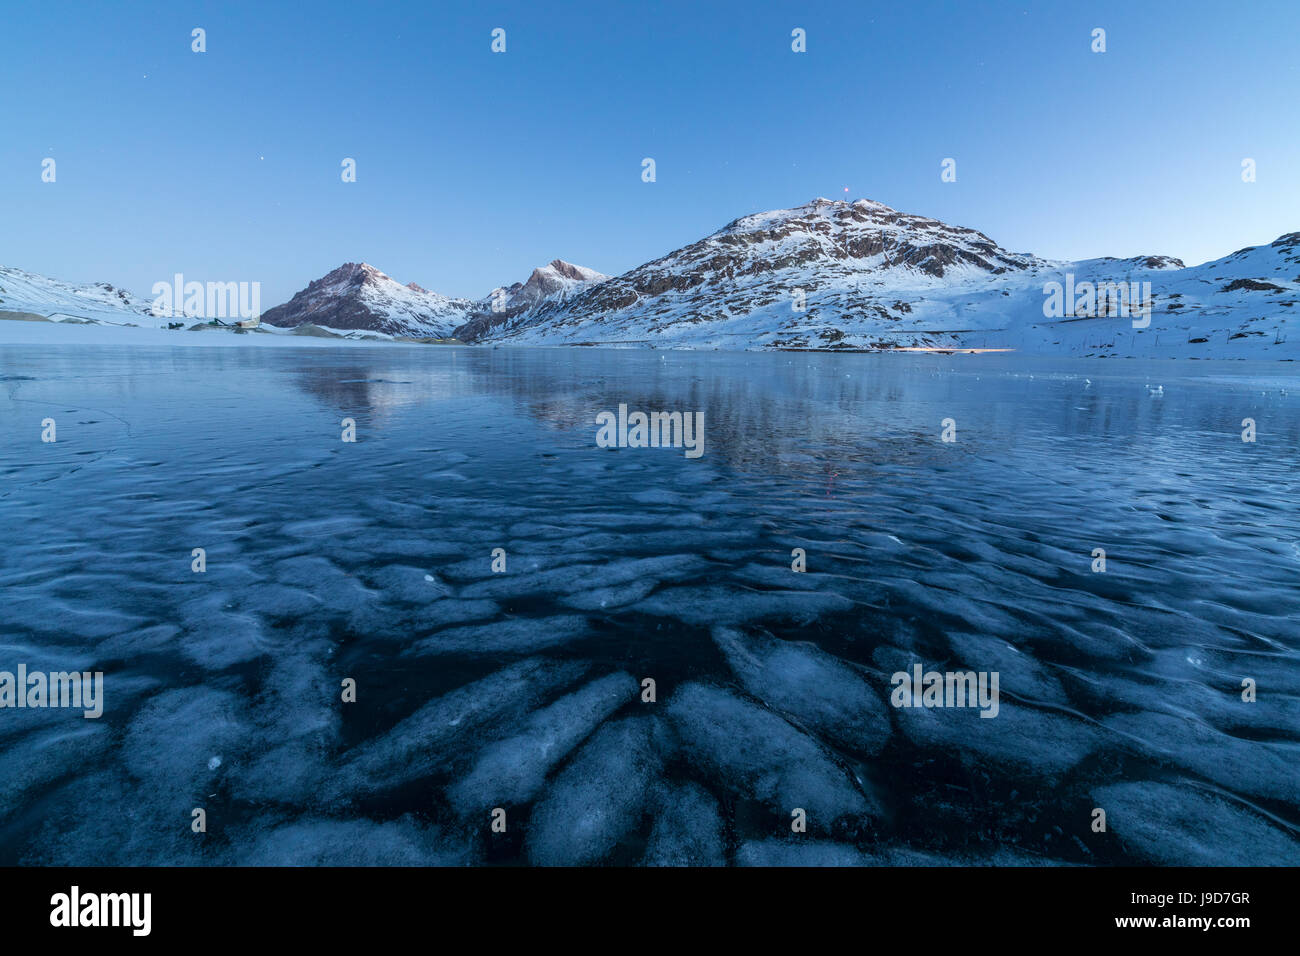 La congelati Lago Bianco incorniciato le luci blu del crepuscolo, Passo Bernina del cantone dei Grigioni, Engadina, Svizzera, Europa Foto Stock